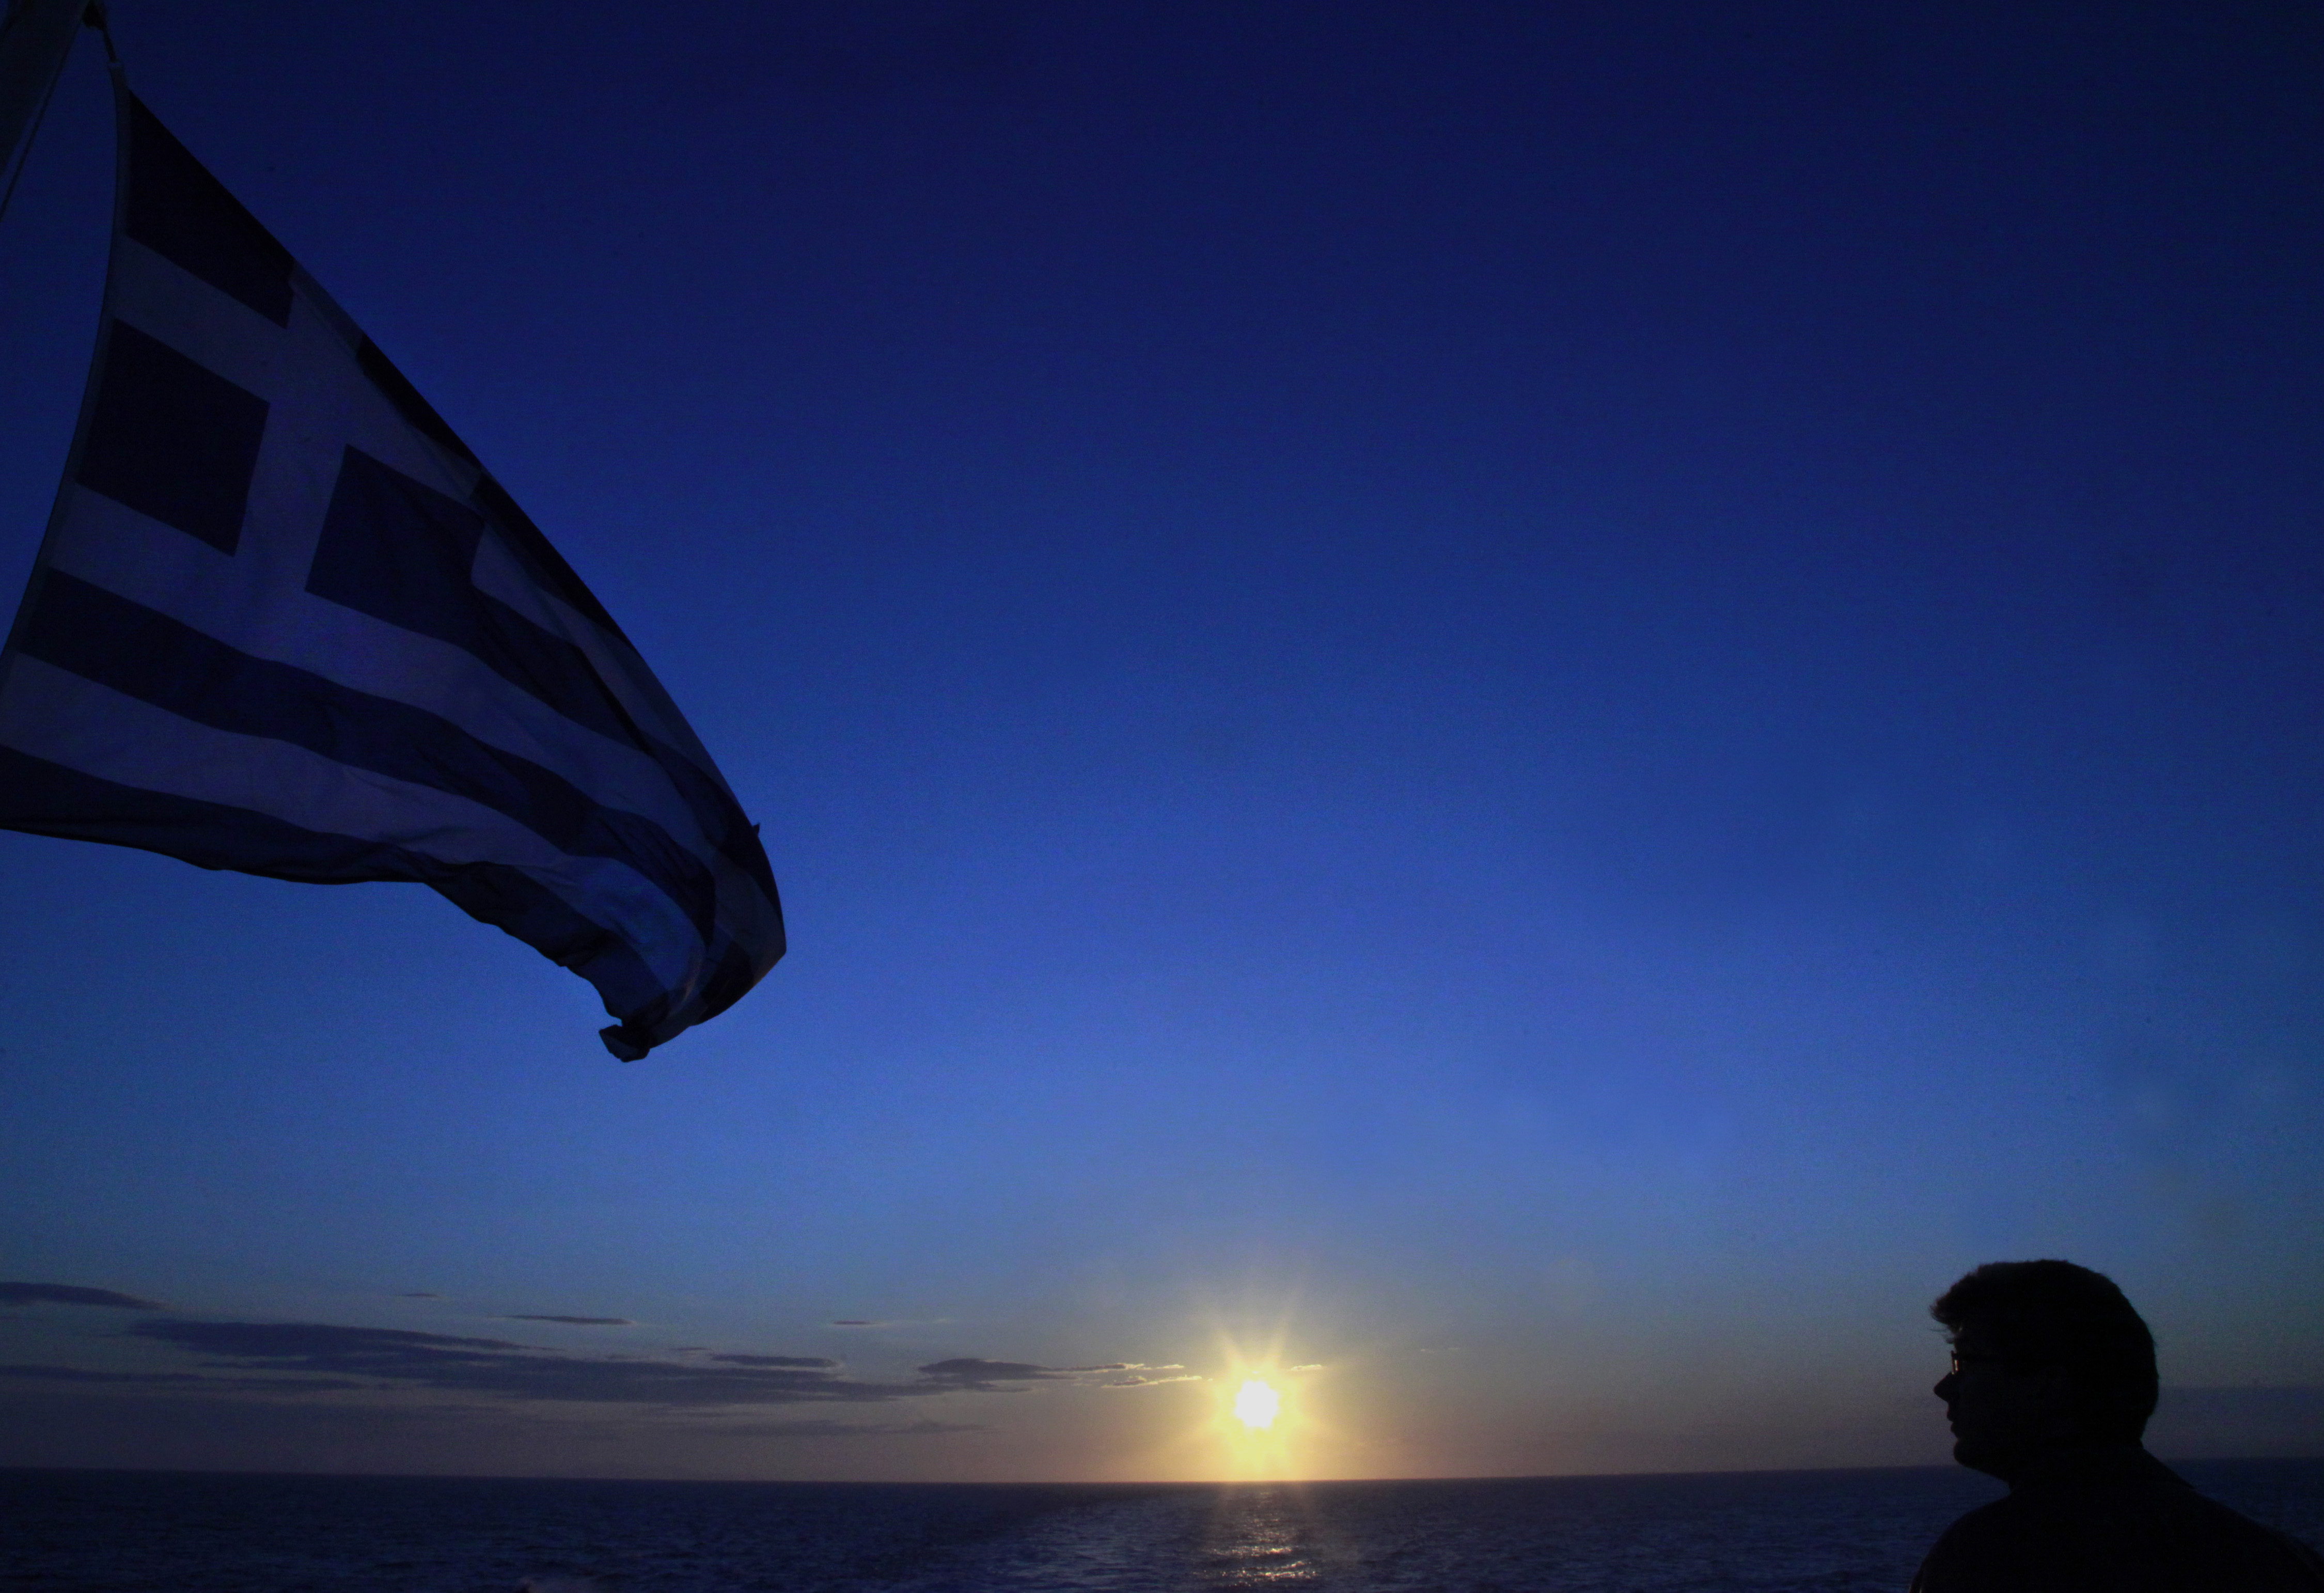 Σε ανησυχίες Αμερικανών επενδυτών για την Ελλάδα αναφέρεται το CNBC